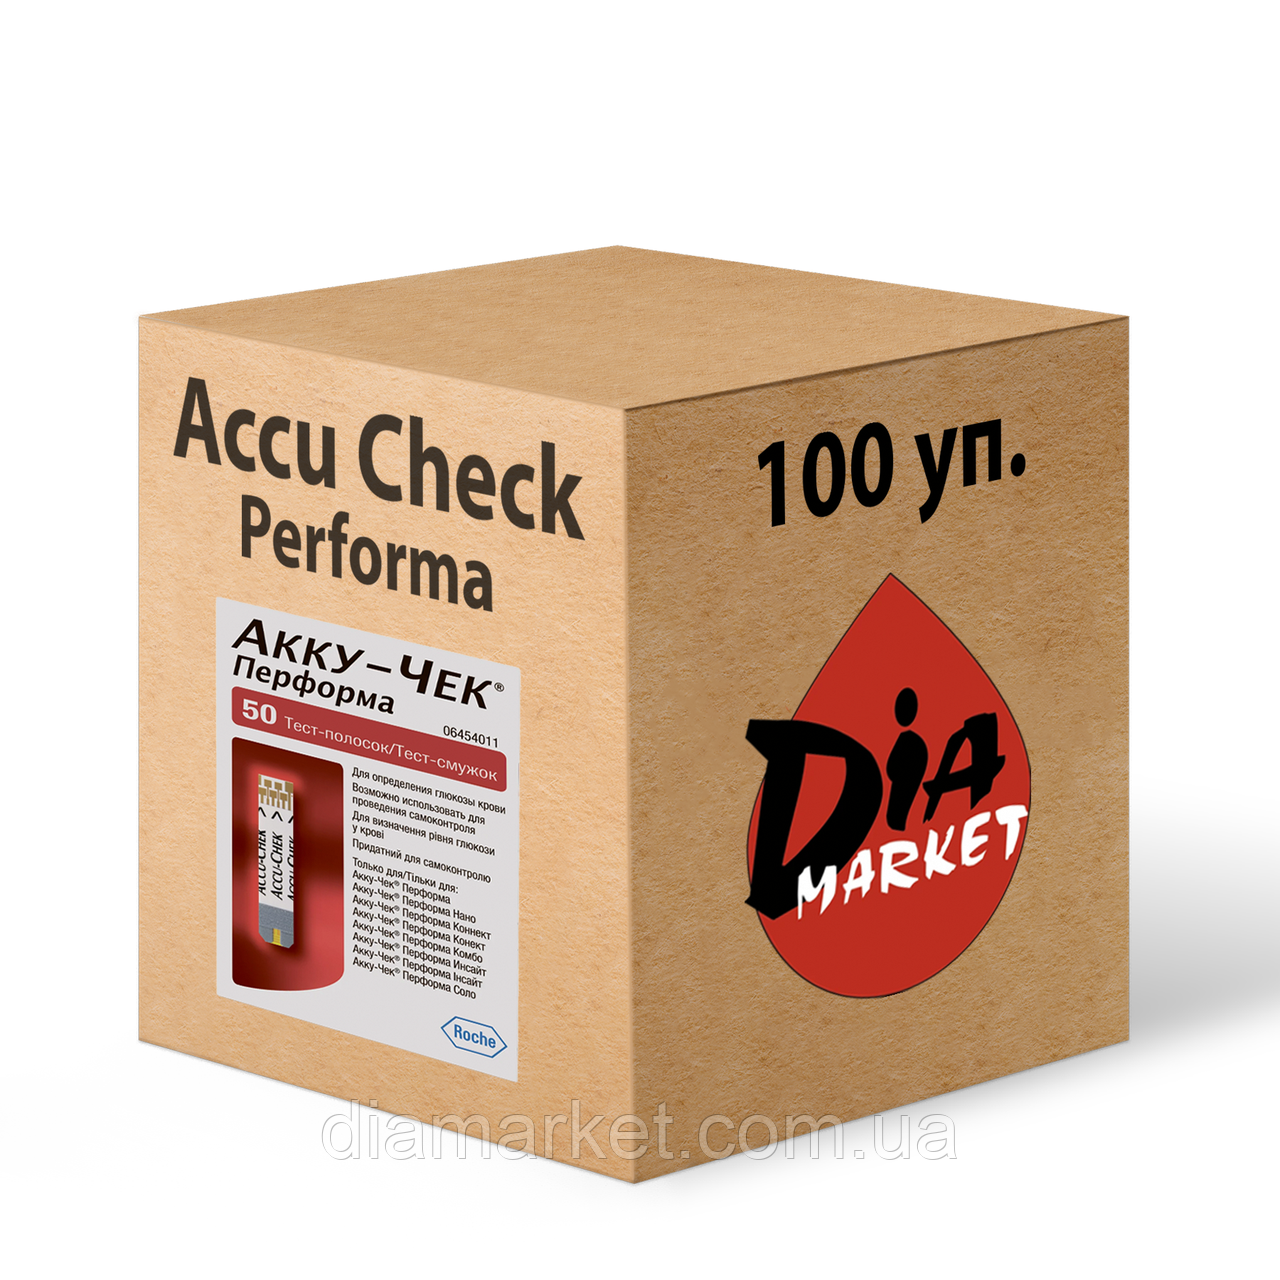 Тест-смужки Акку-Чек Перформа (Accu-Chek Performa) - 100 упаковок по 50 шт.